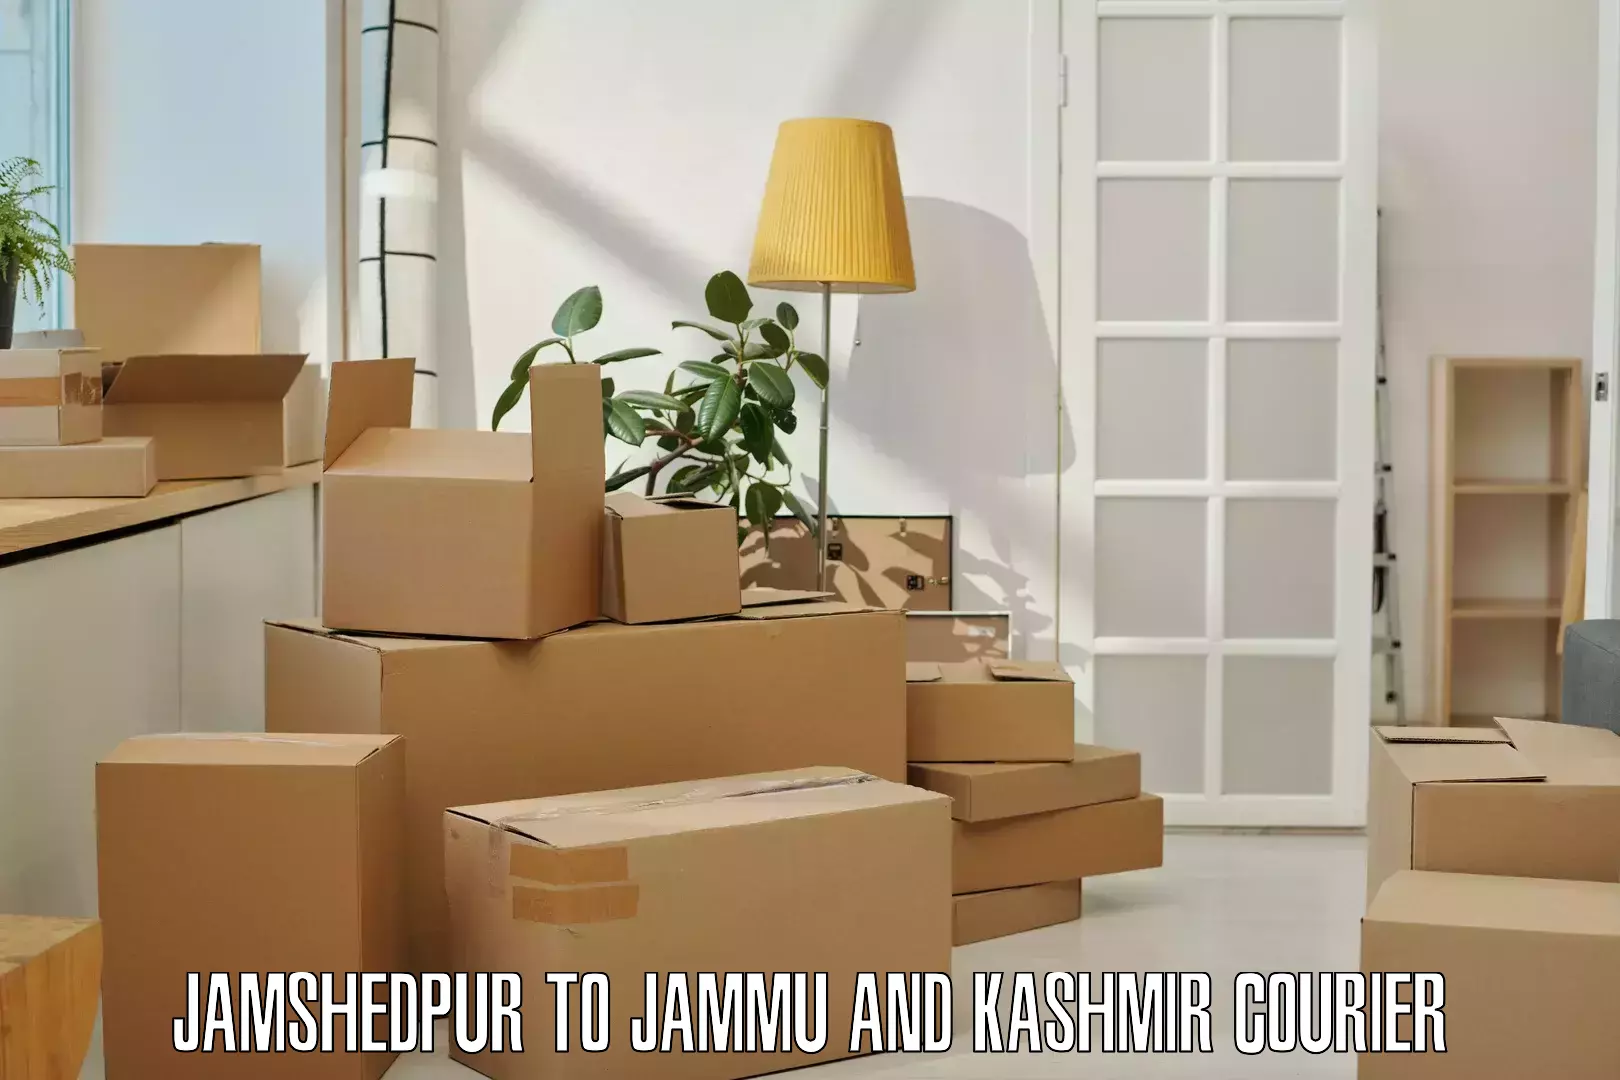 Modern delivery methods Jamshedpur to Baramulla